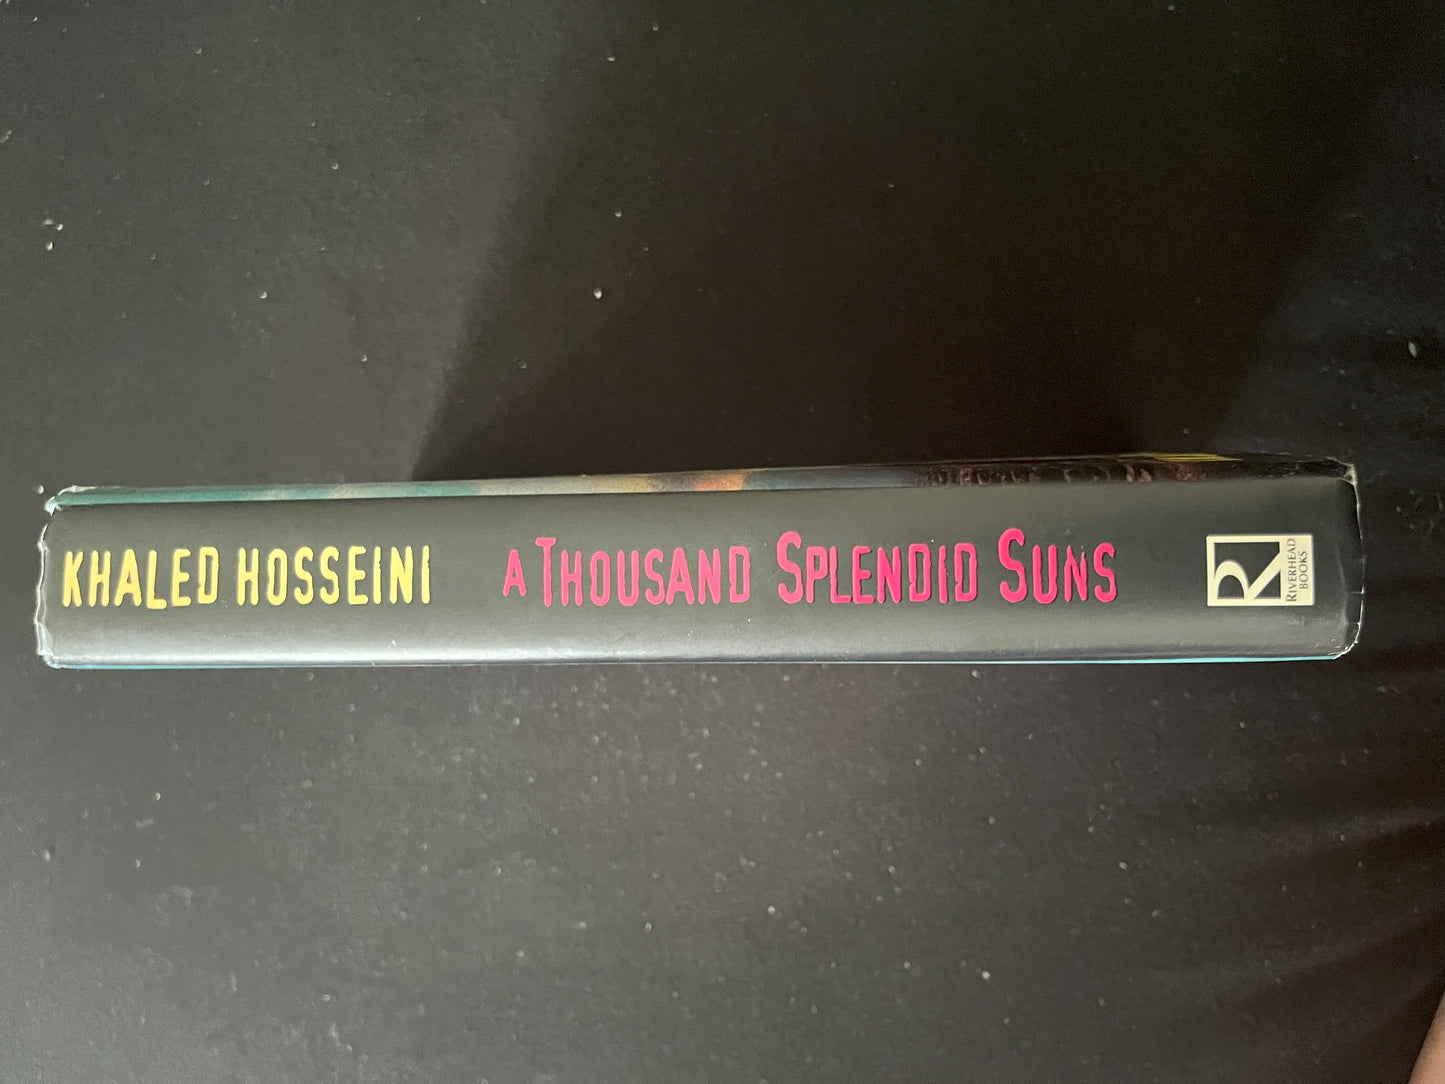 A THOUSAND SPLENDID SUNS by Khaled Hosseini